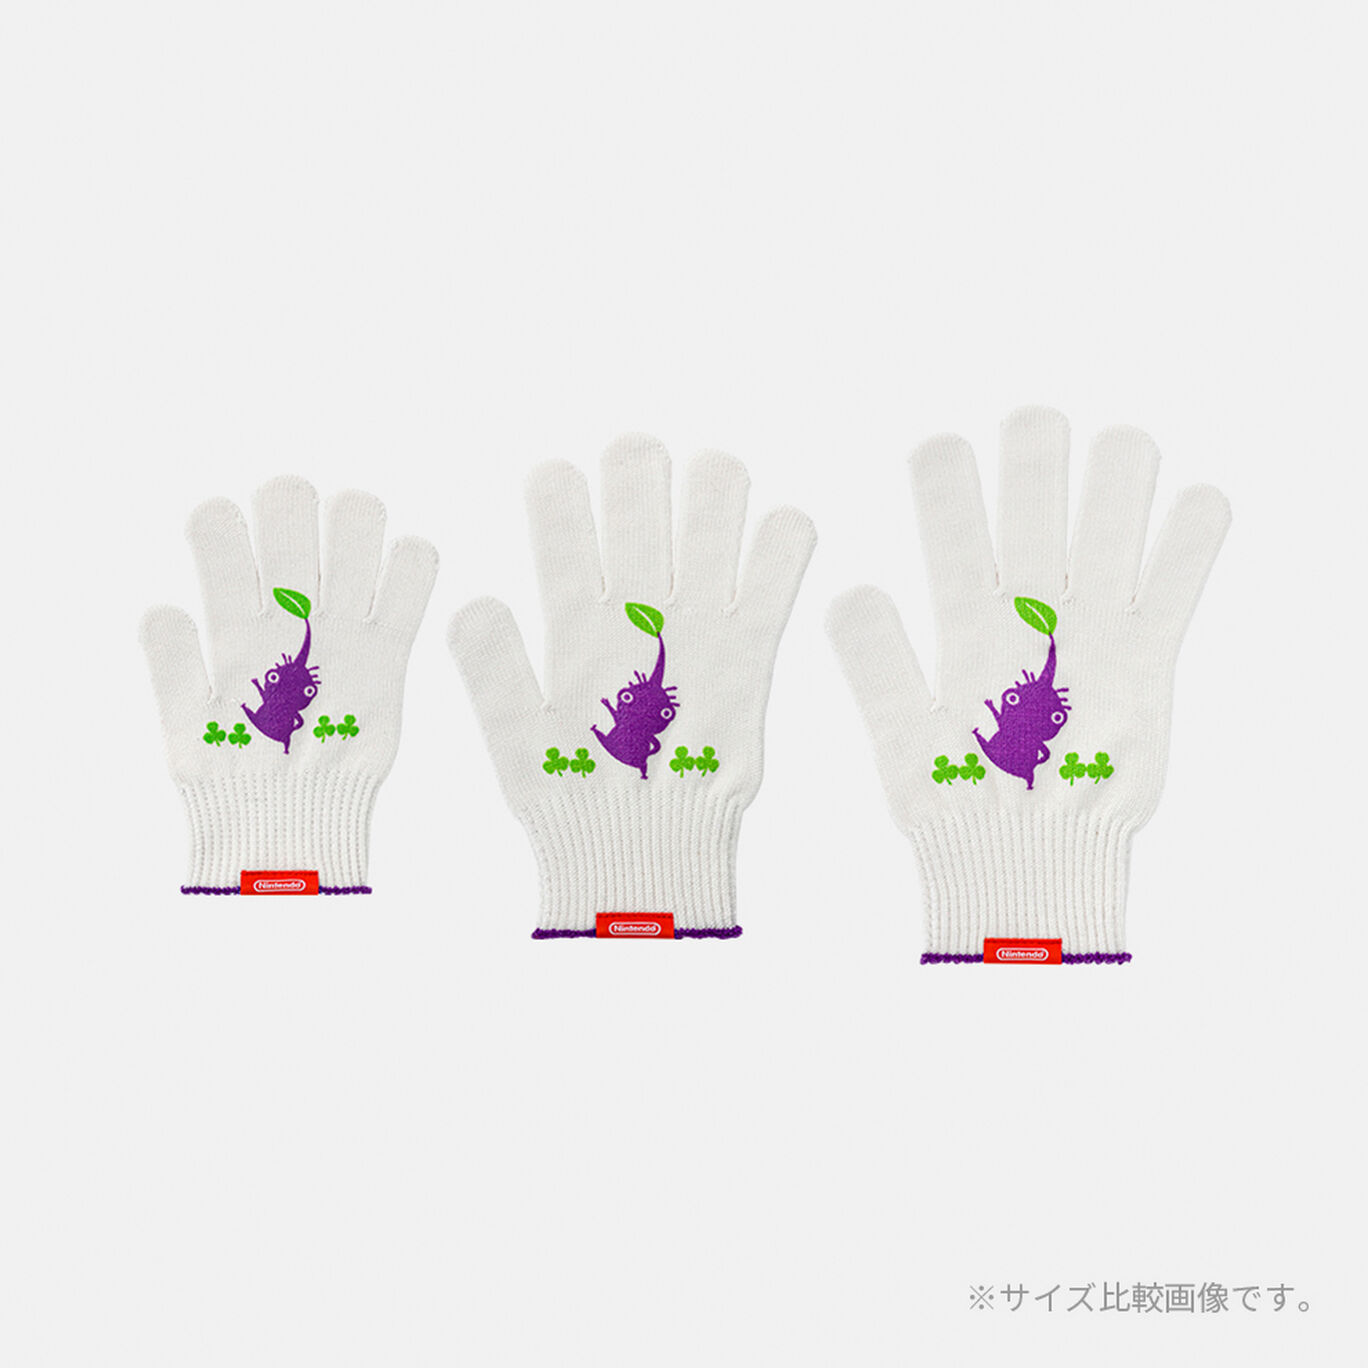 軍手 力持ちの紫ピクミン S PIKMIN【Nintendo TOKYO/OSAKA取り扱い商品】